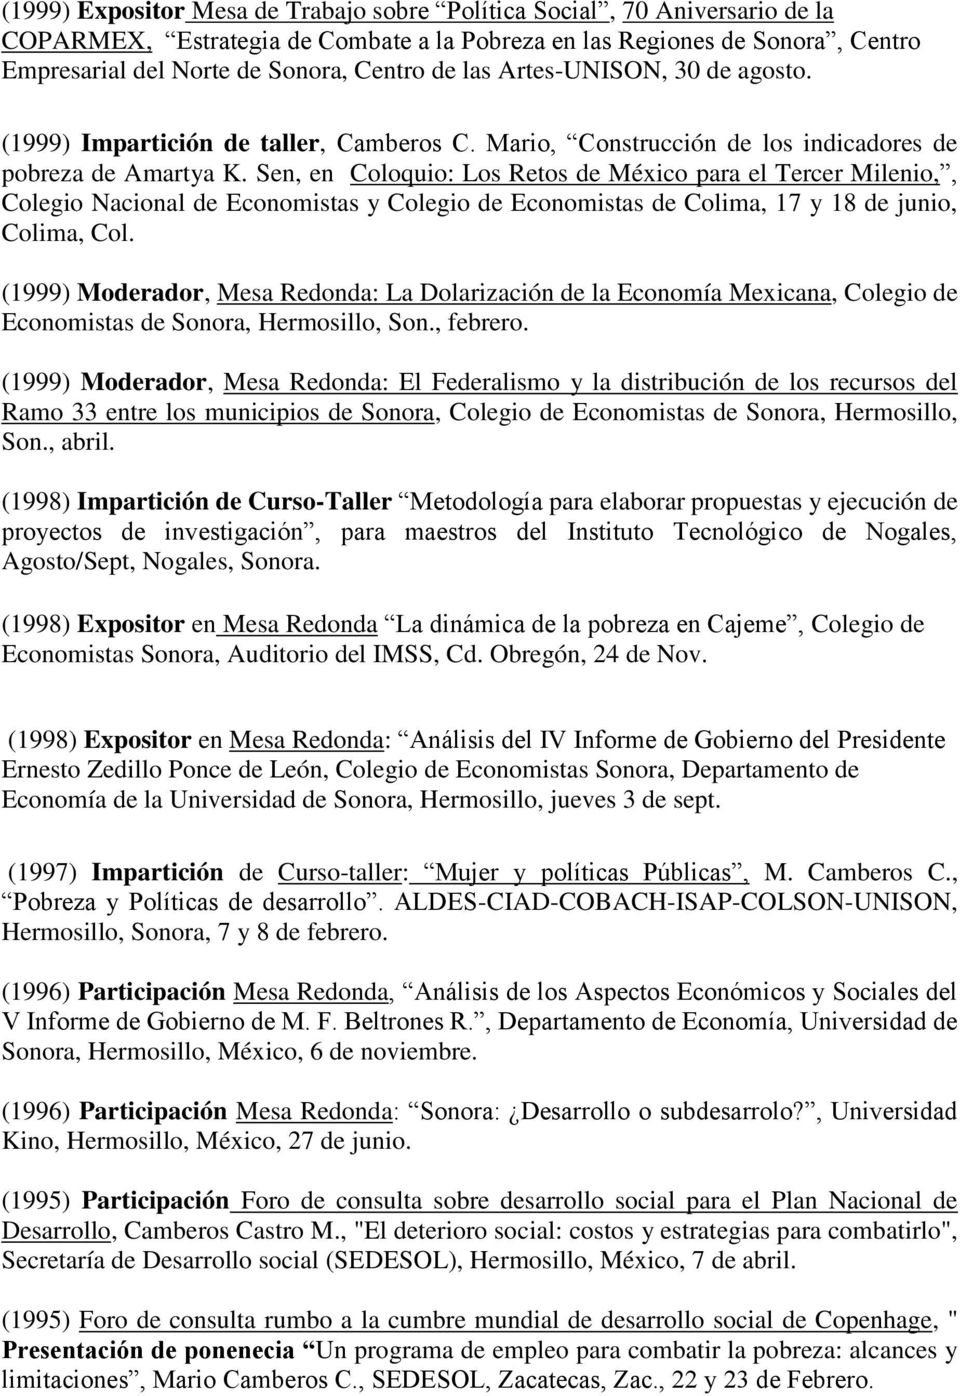 Sen, en Coloquio: Los Retos de México para el Tercer Milenio,, Colegio Nacional de Economistas y Colegio de Economistas de Colima, 17 y 18 de junio, Colima, Col.